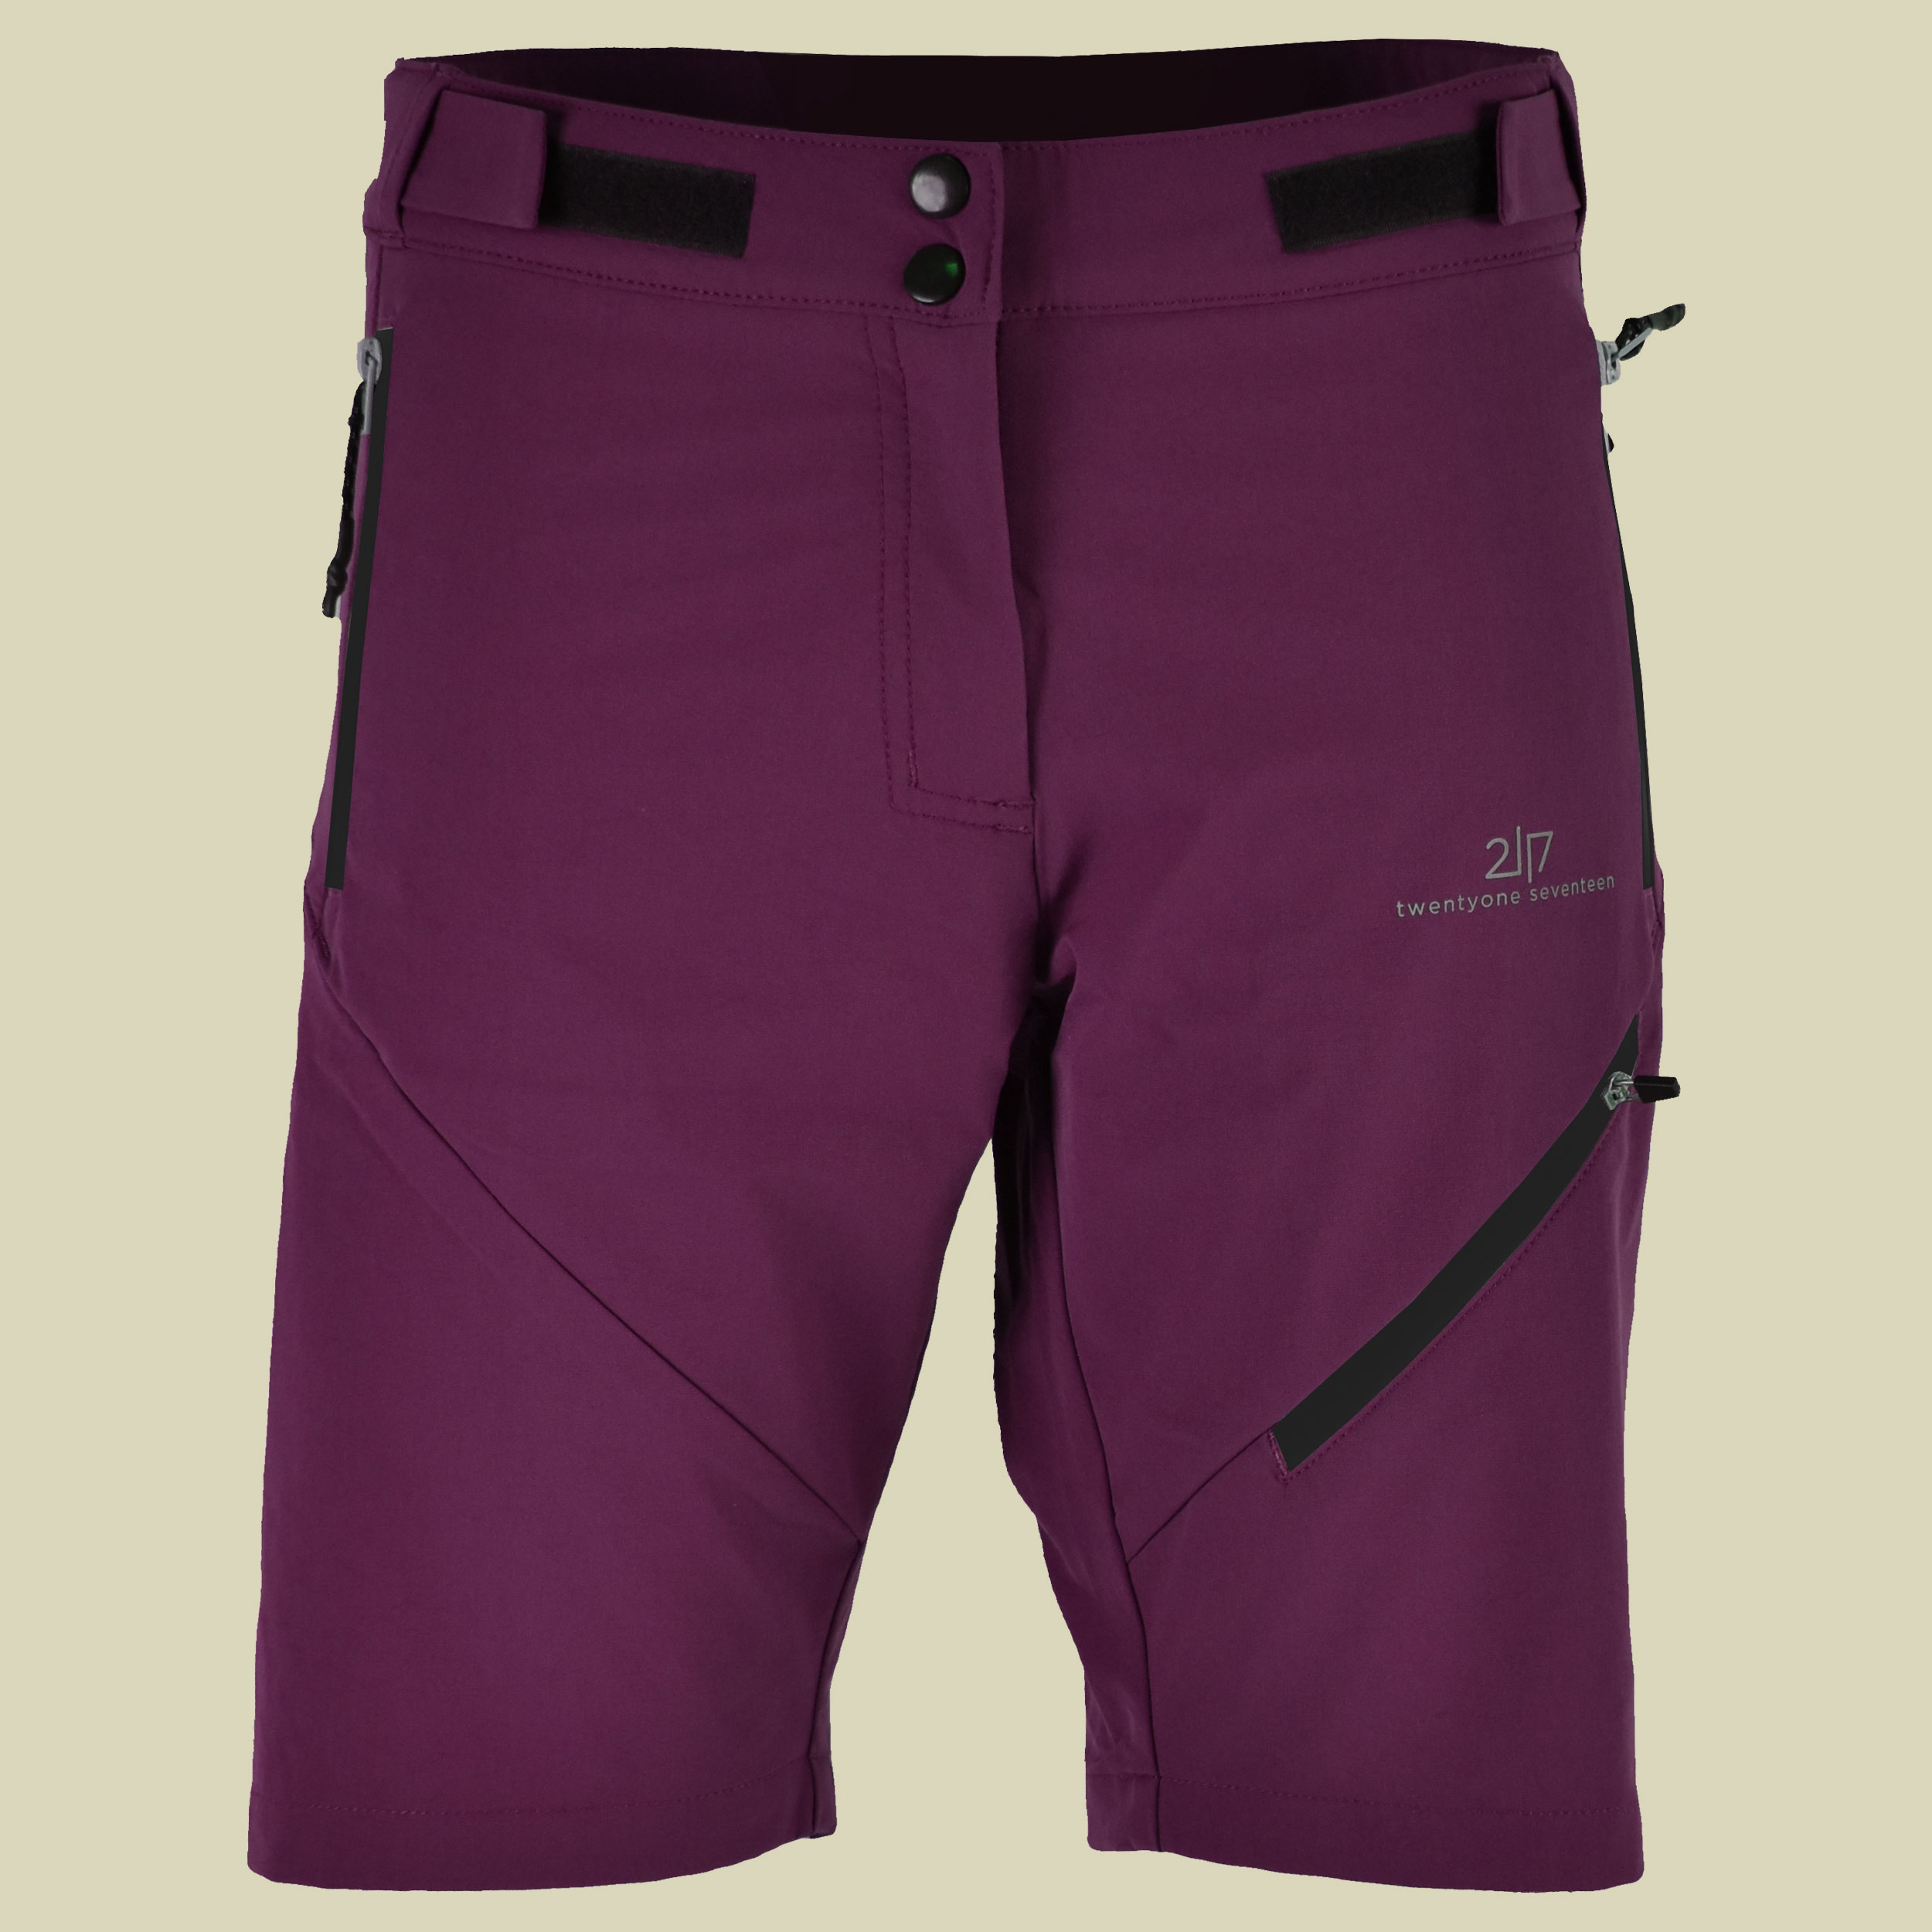 Sandhem Eco Outdoor Shorts Women Größe S Farbe dark lavender